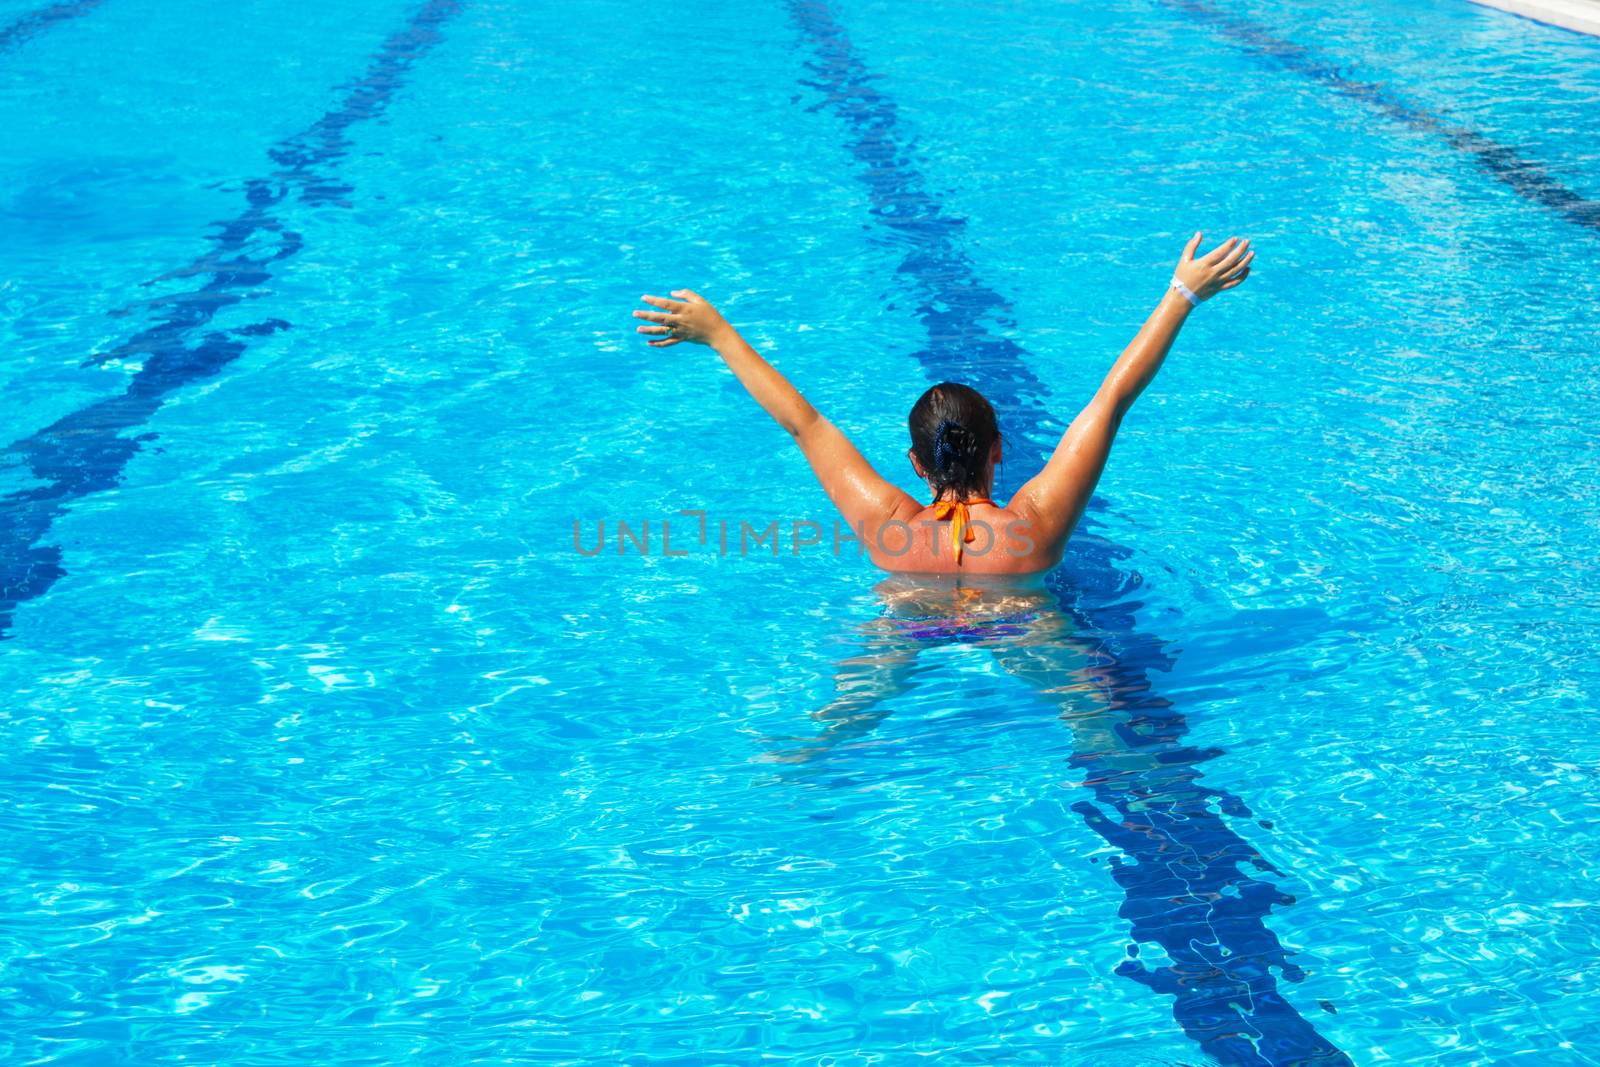 pool and beautiful woman by yebeka